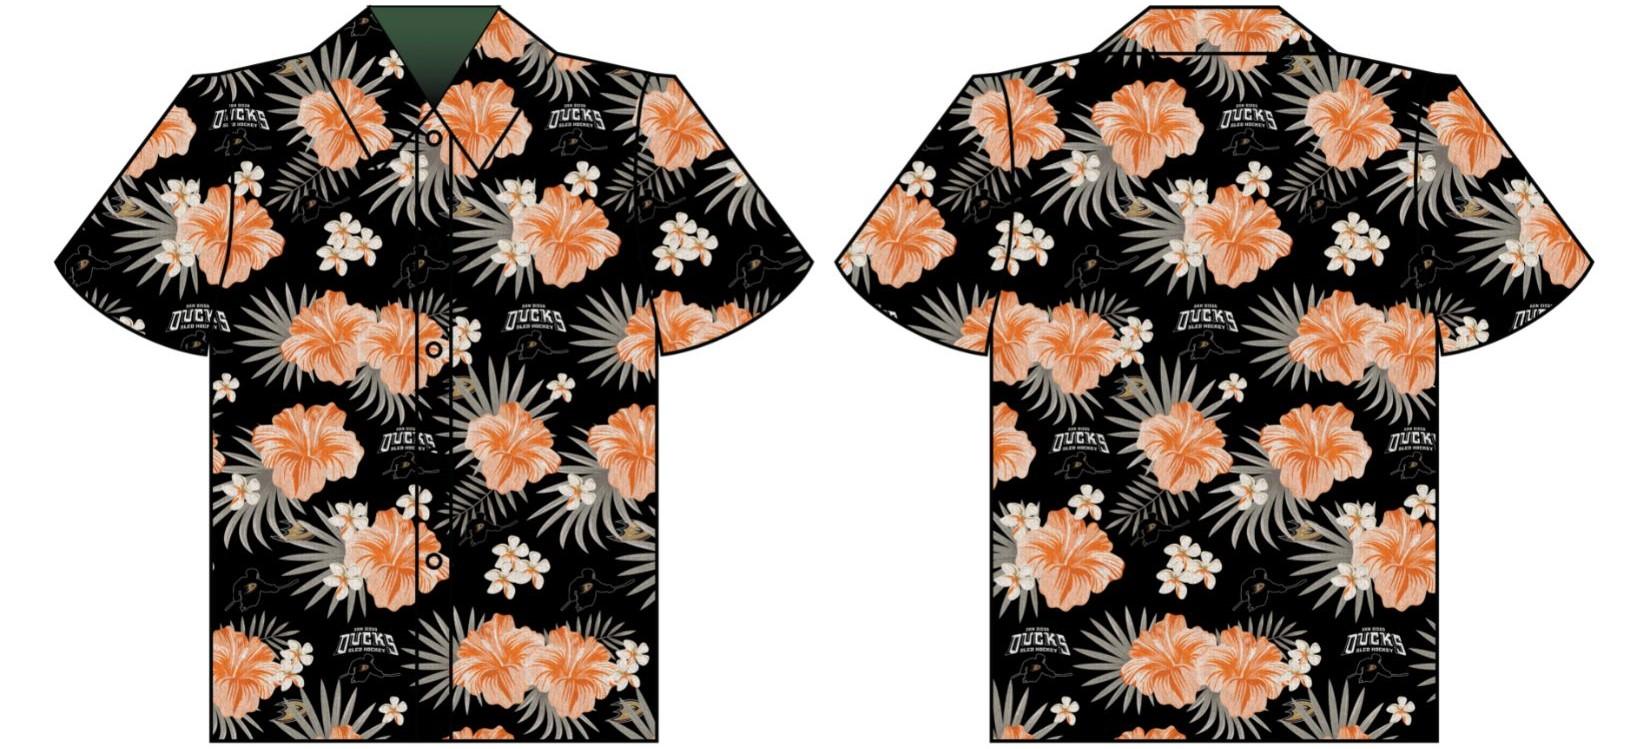 Candor Threads' Hawaiian shirt design for the San Diego Ducks Sled Hockey team.